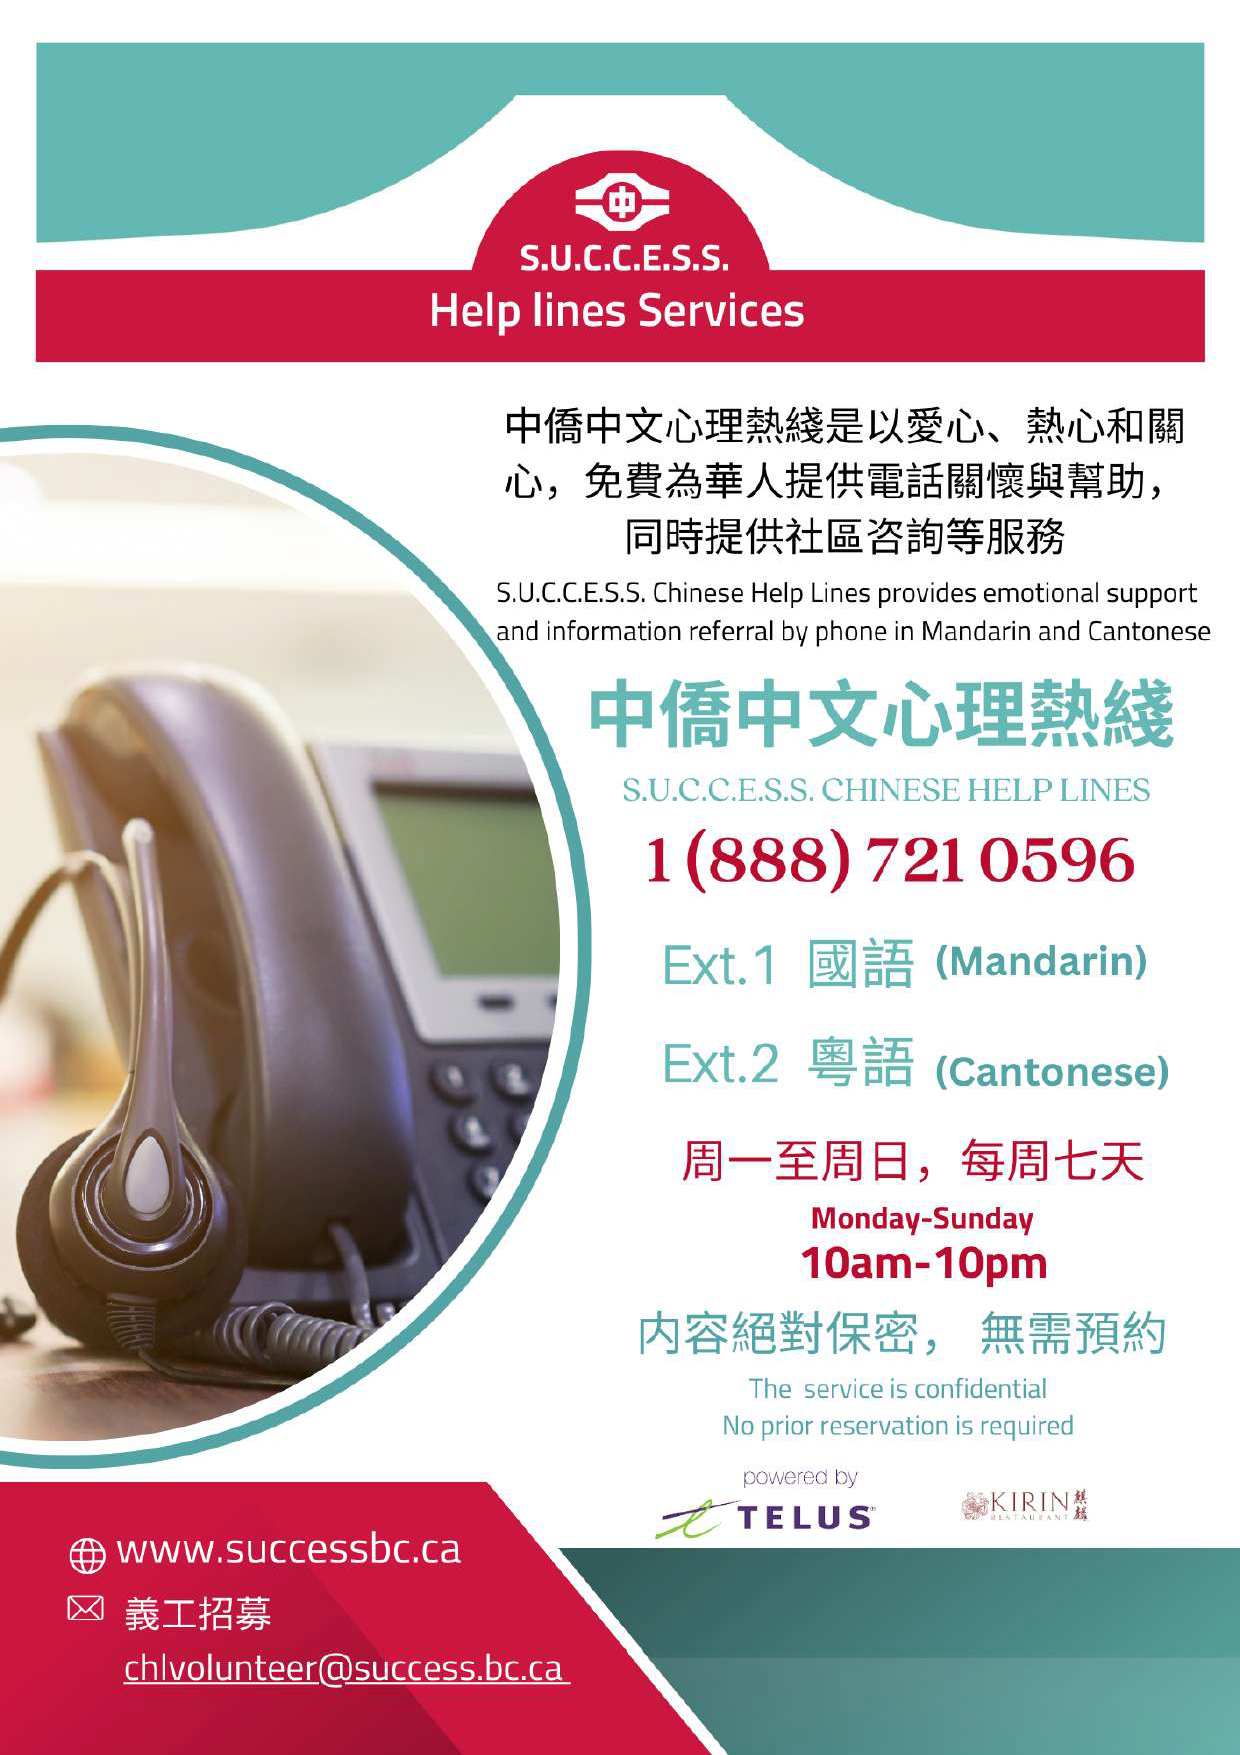 Helpline Services  S.U.C.C.E.S.S.  5 languages_Page_2.png